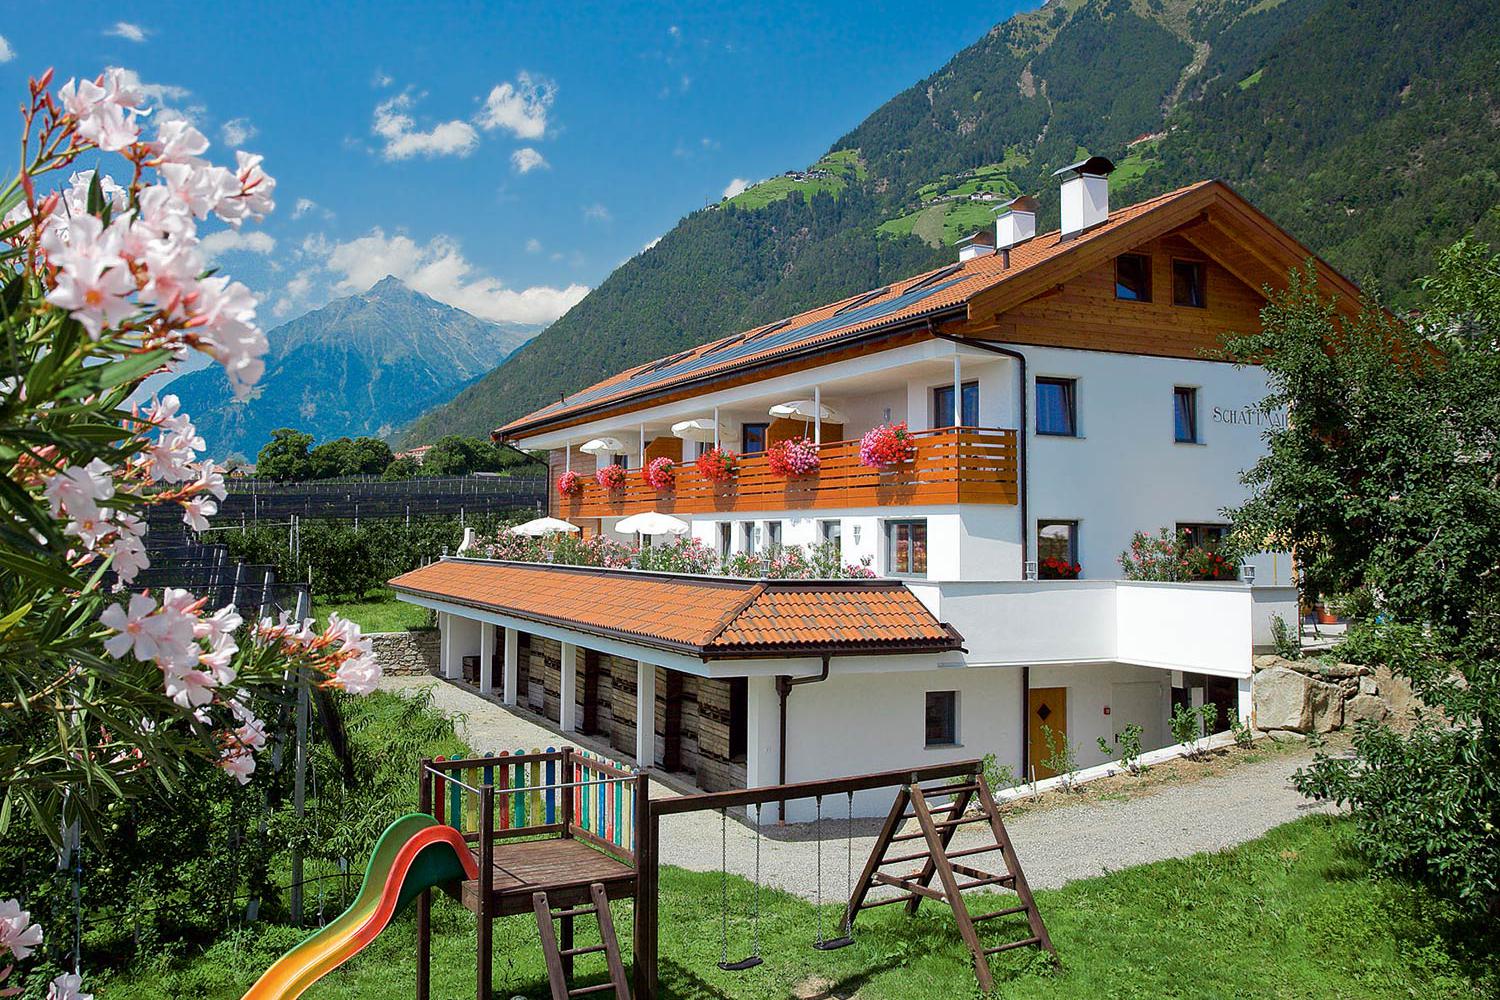 Schattmair Hof - Farm in Dorf Tirol